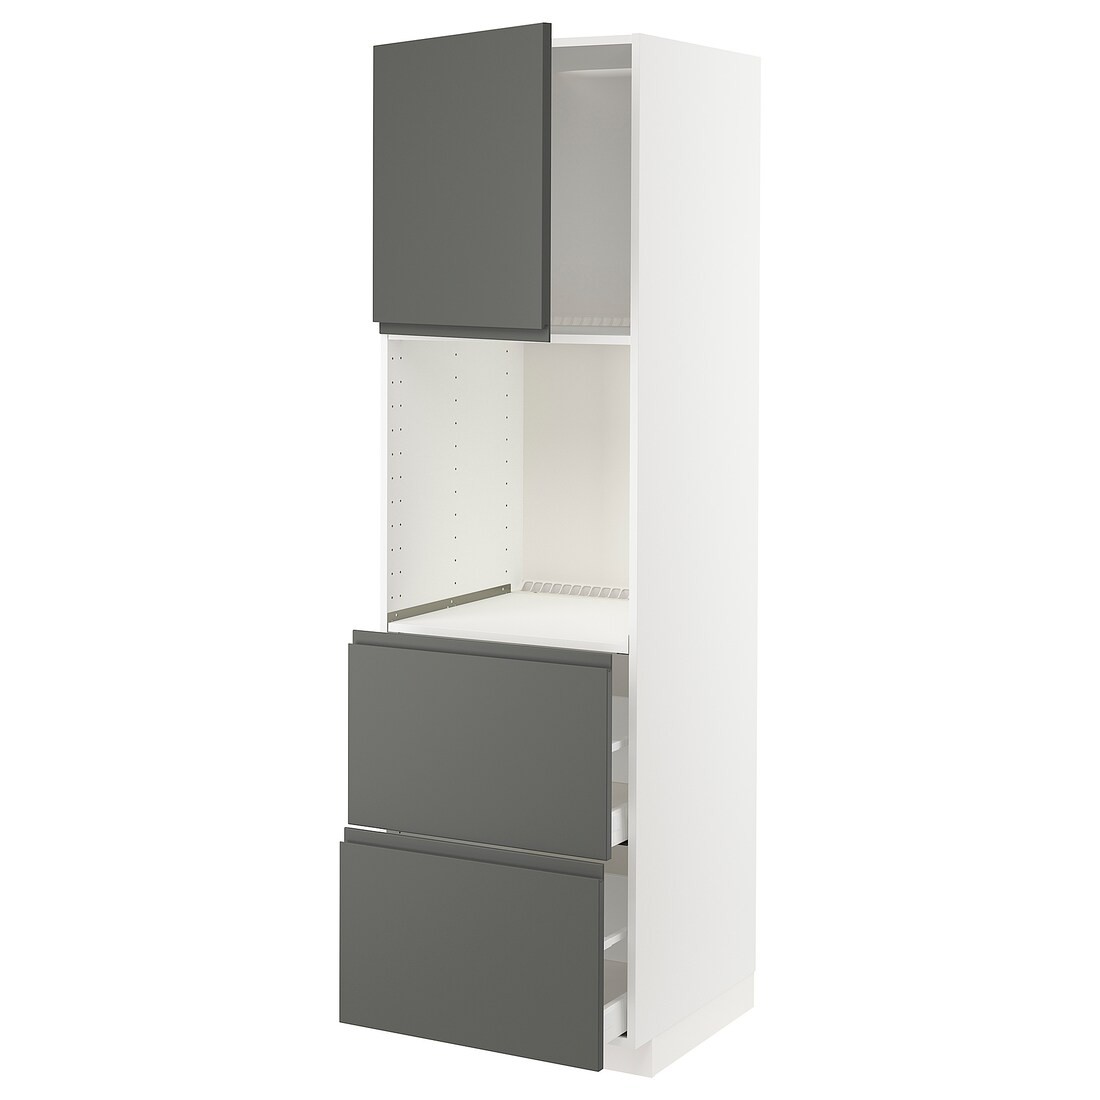 METOD МЕТОД / MAXIMERA МАКСИМЕРА Высокий шкаф для духовки с дверцей / ящиками, белый / Voxtorp темно-серый, 60x60x200 см